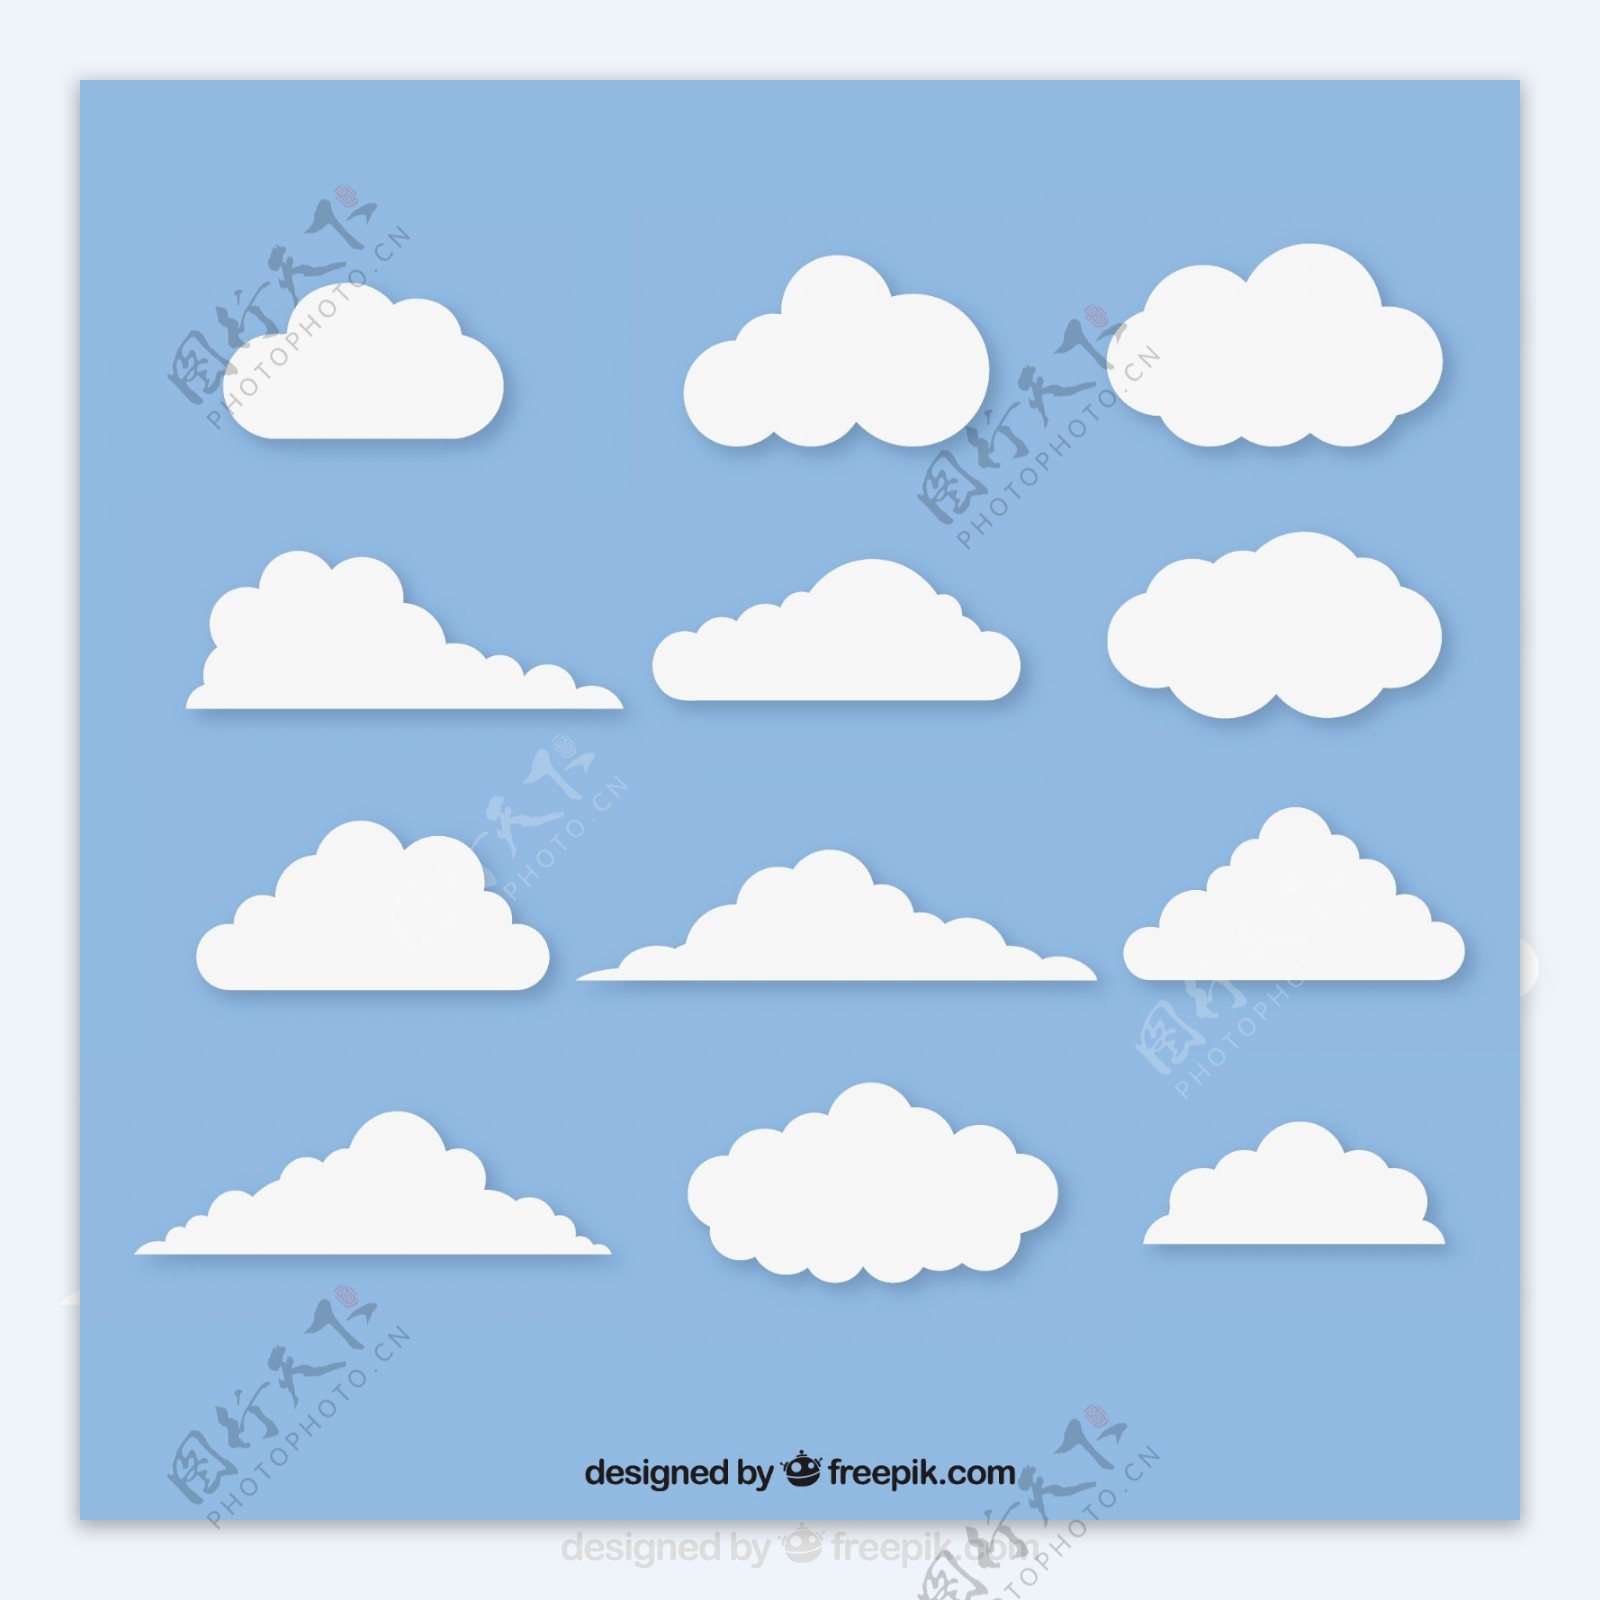 平面设计中的白云分类